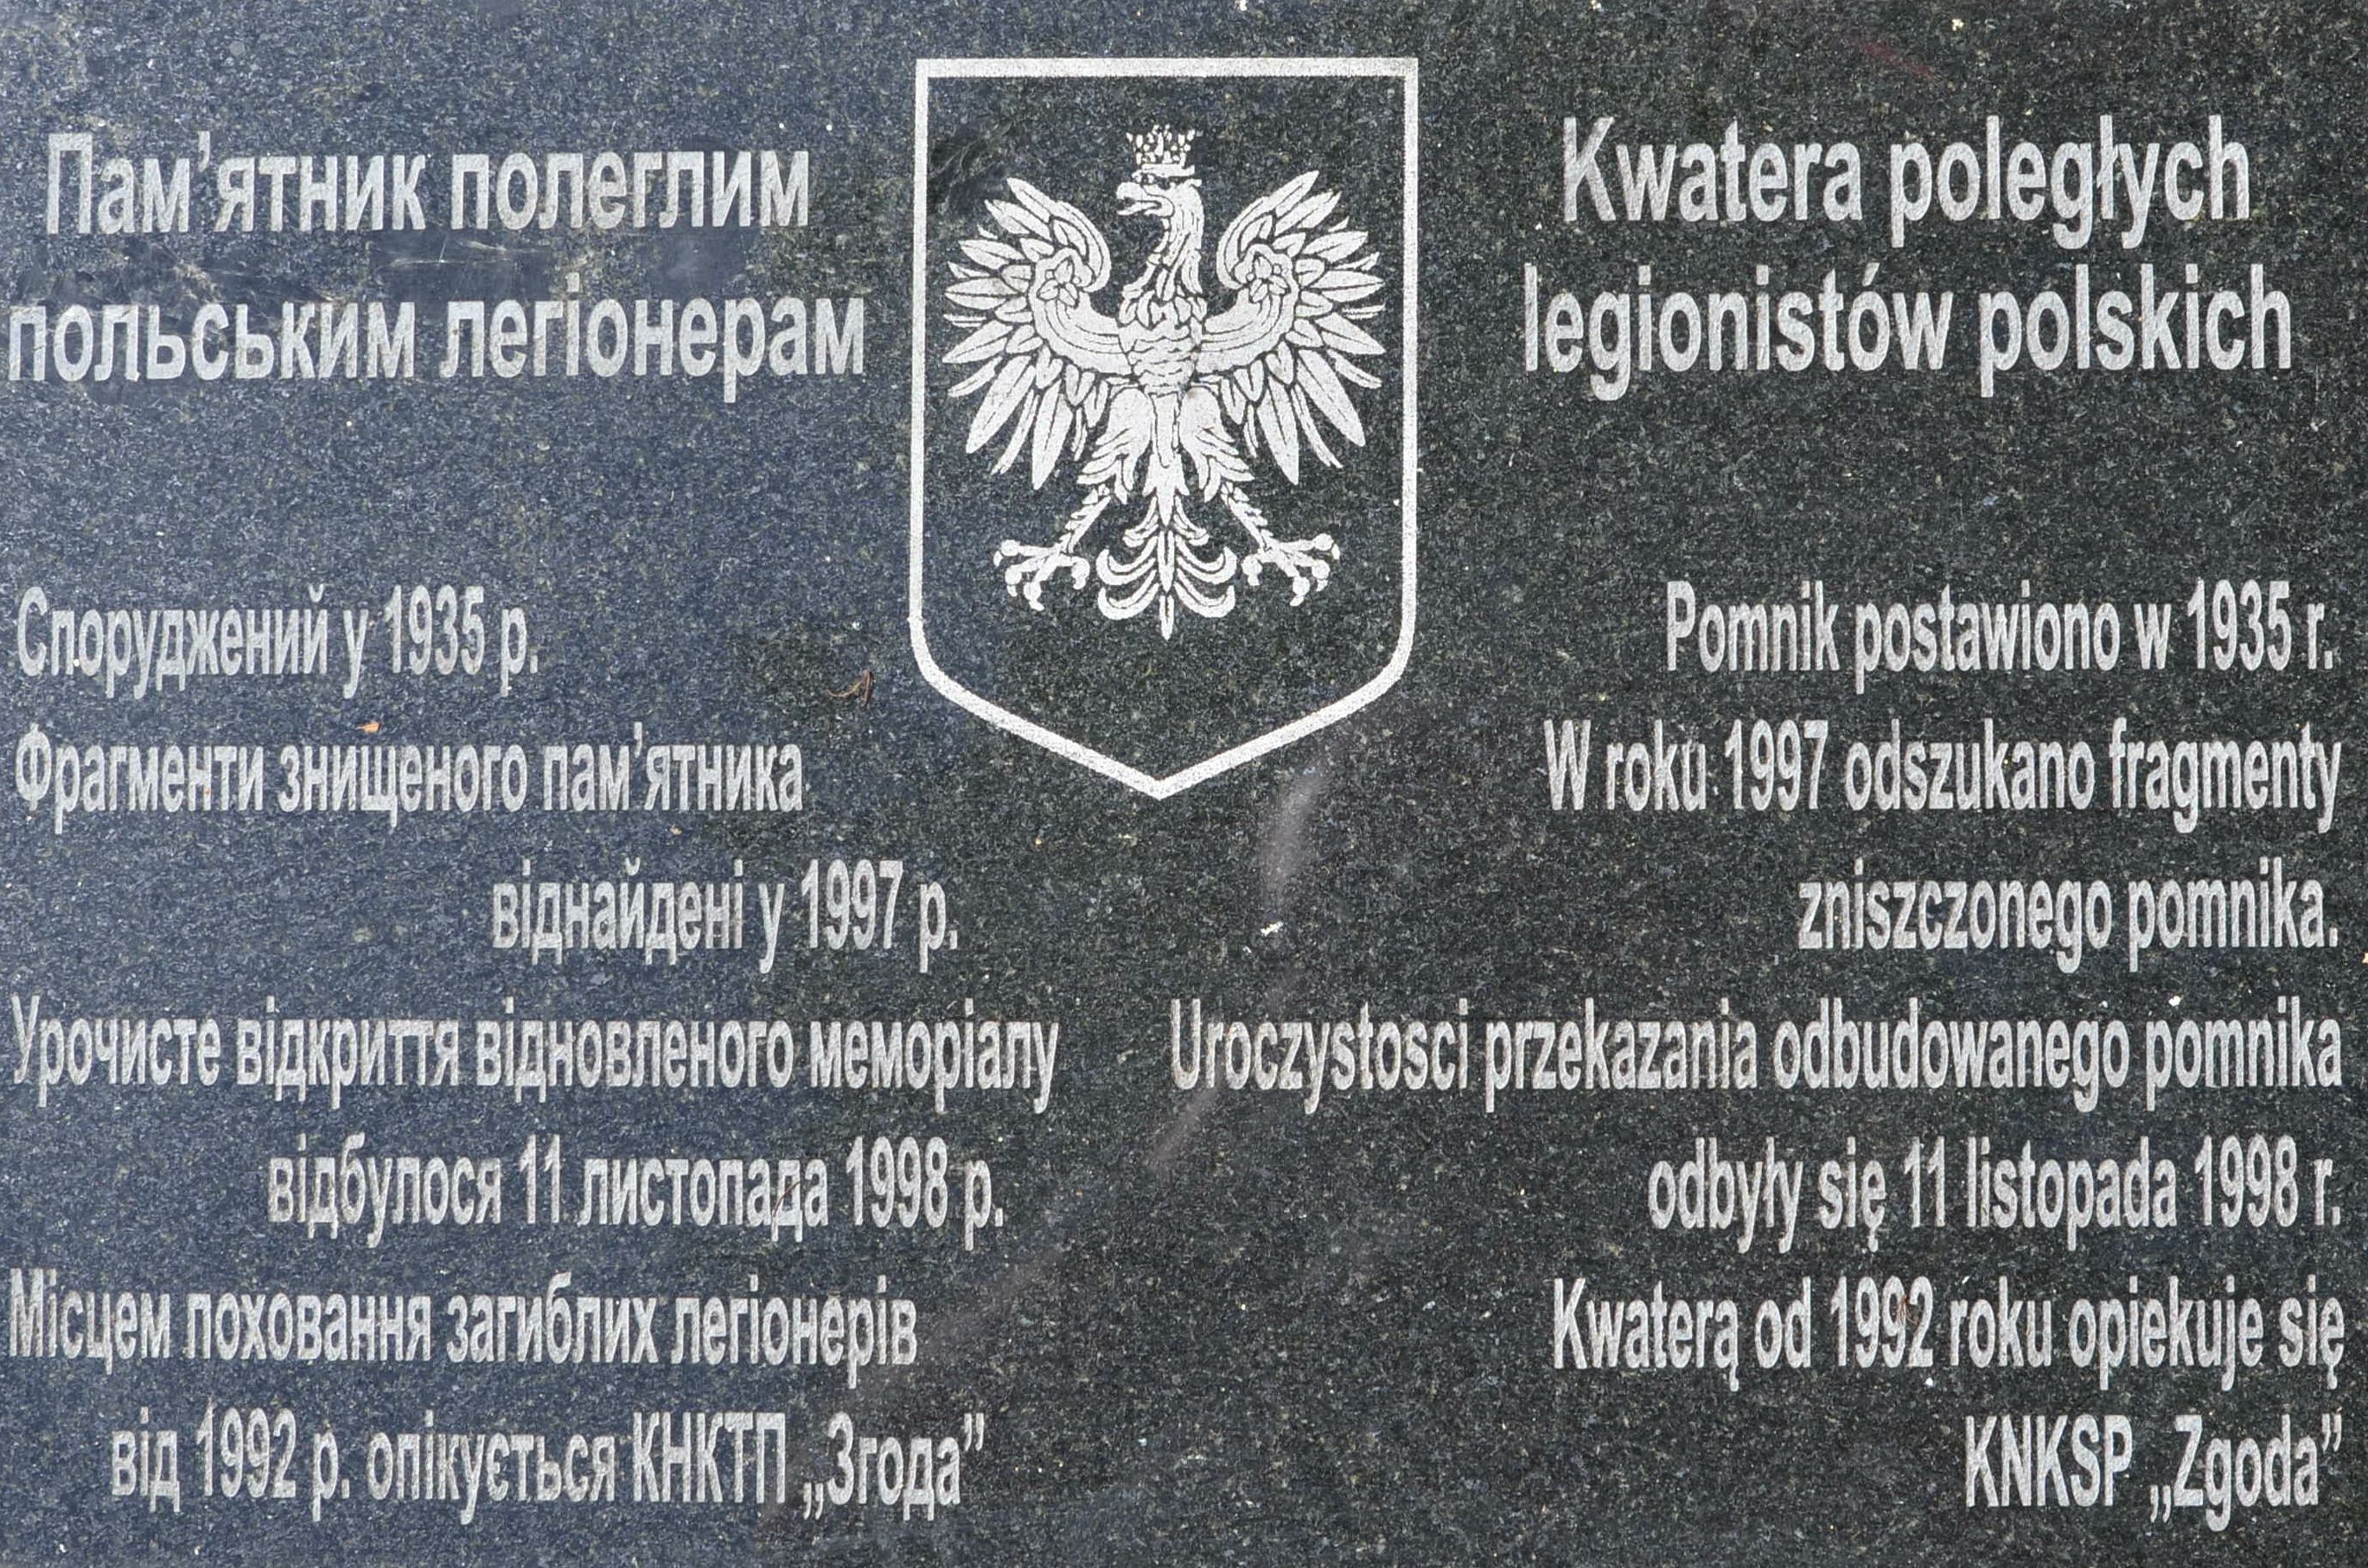 Napis z kwatery żołnierzy polskich z 1920 roku (kwatera legionistów)